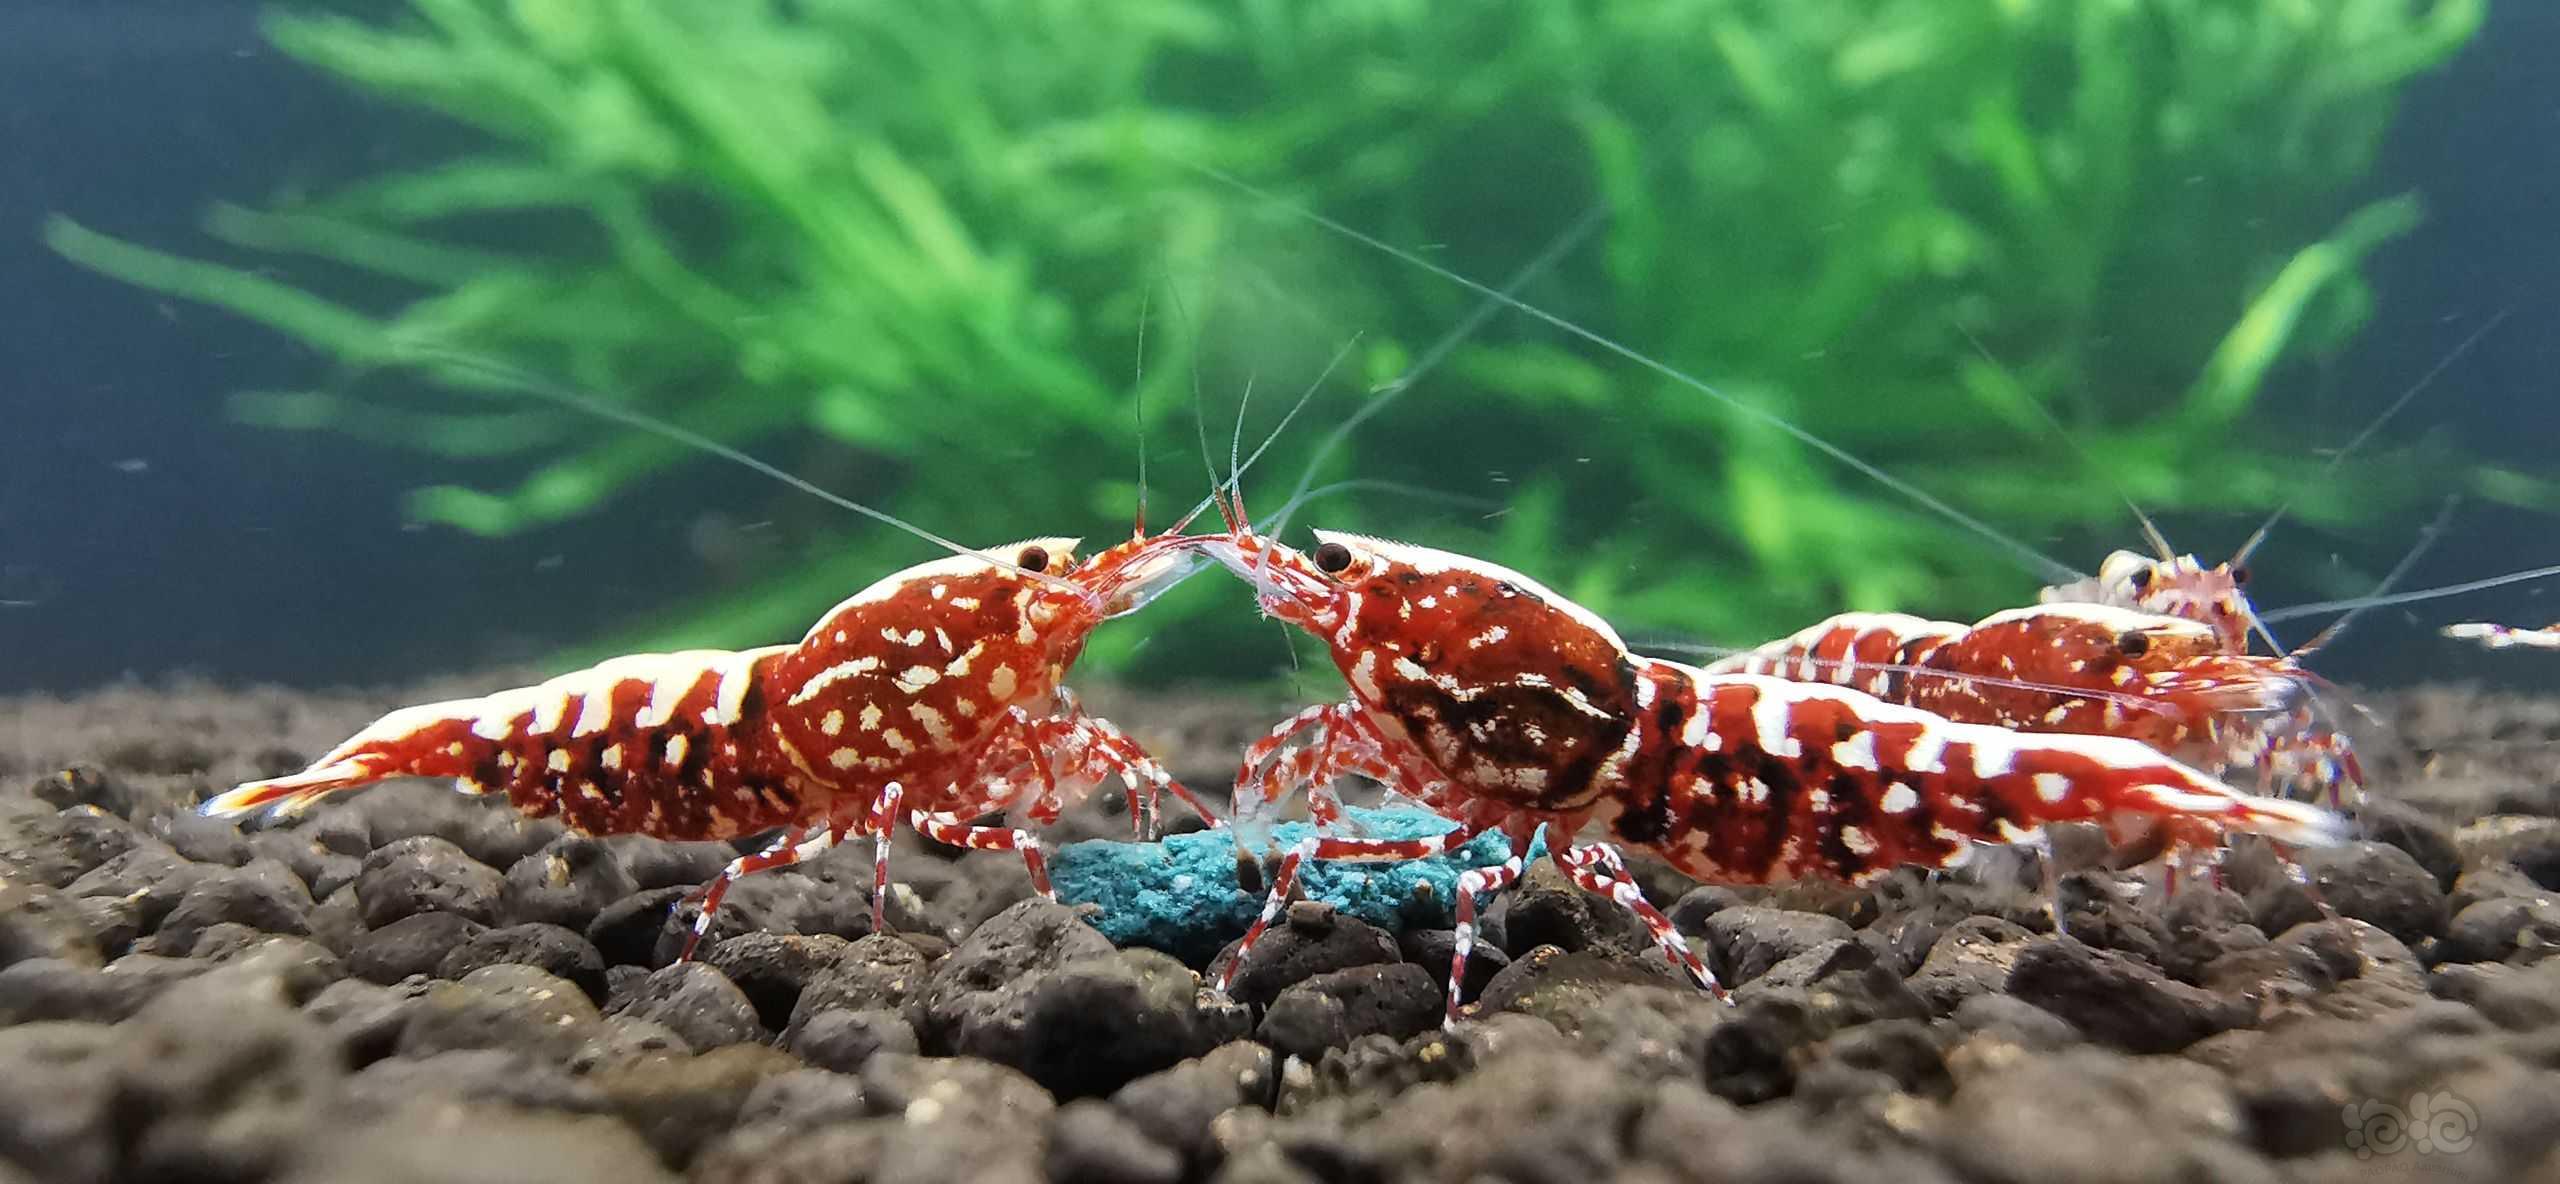 水晶虾啊水晶虾-图1